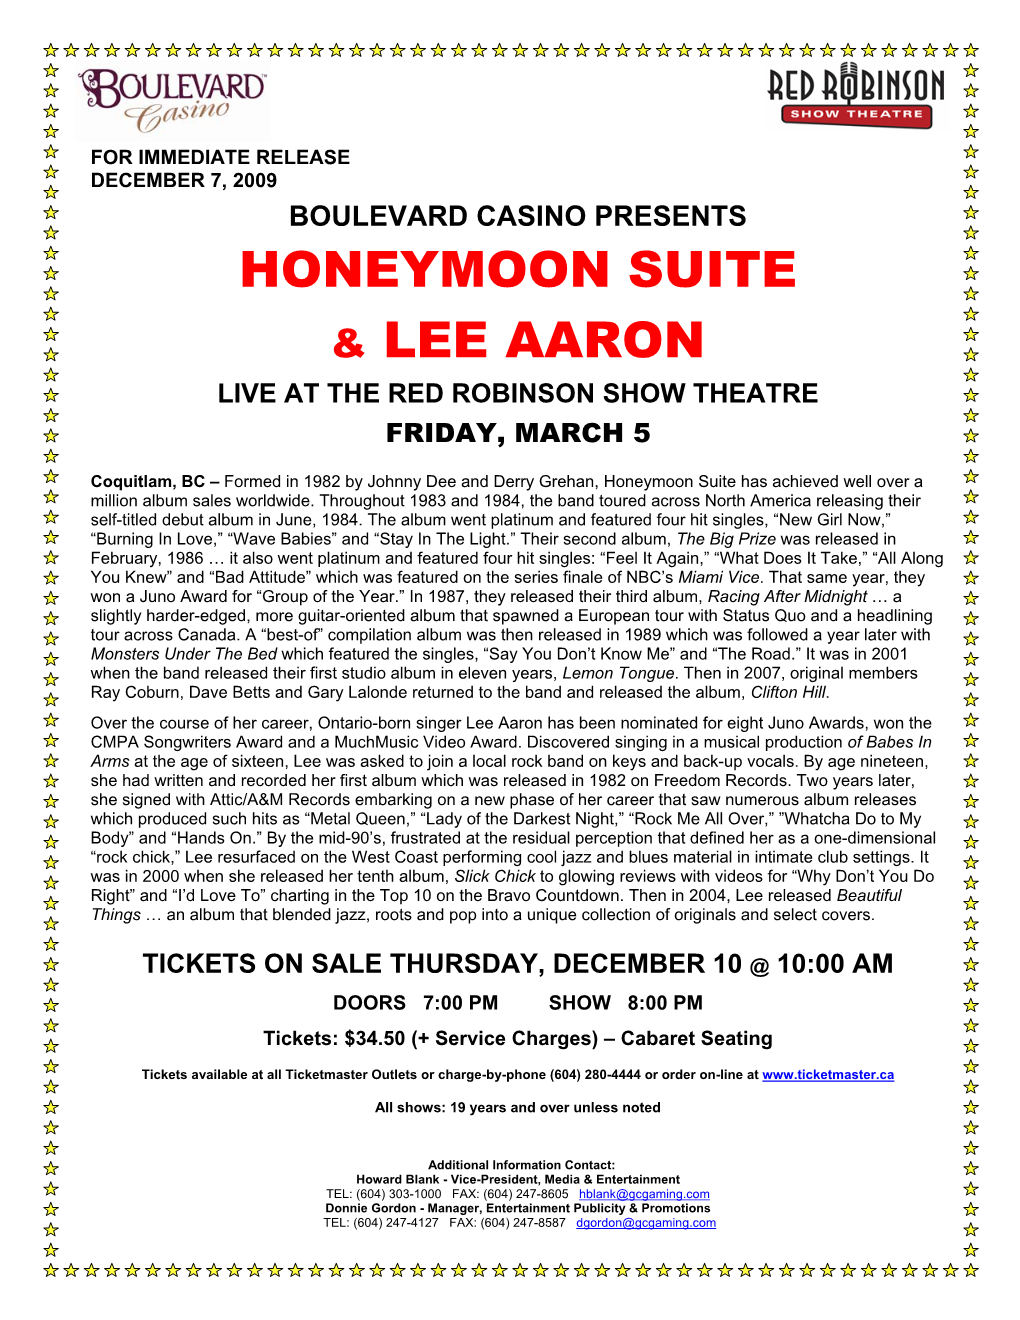 Honeymoon Suite & Lee Aaron